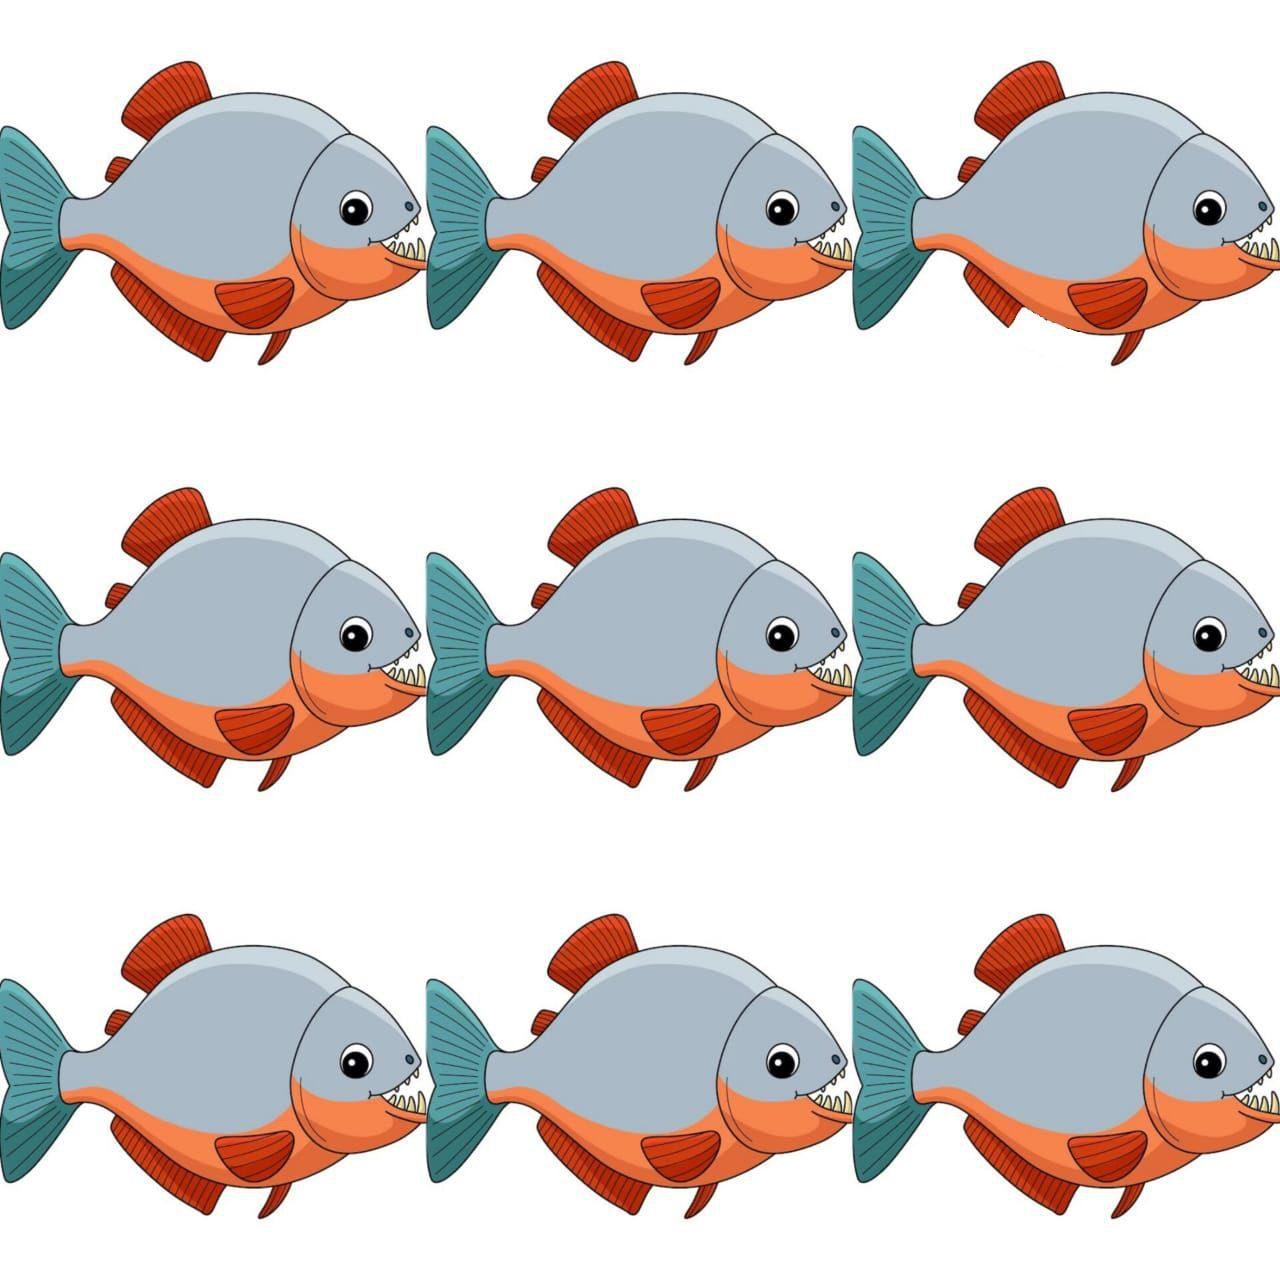 أنت قوي الملاحظة إذا تمكنت من العثور على السمكة المختلفة في الصورة خلال 20 ثانية فقط